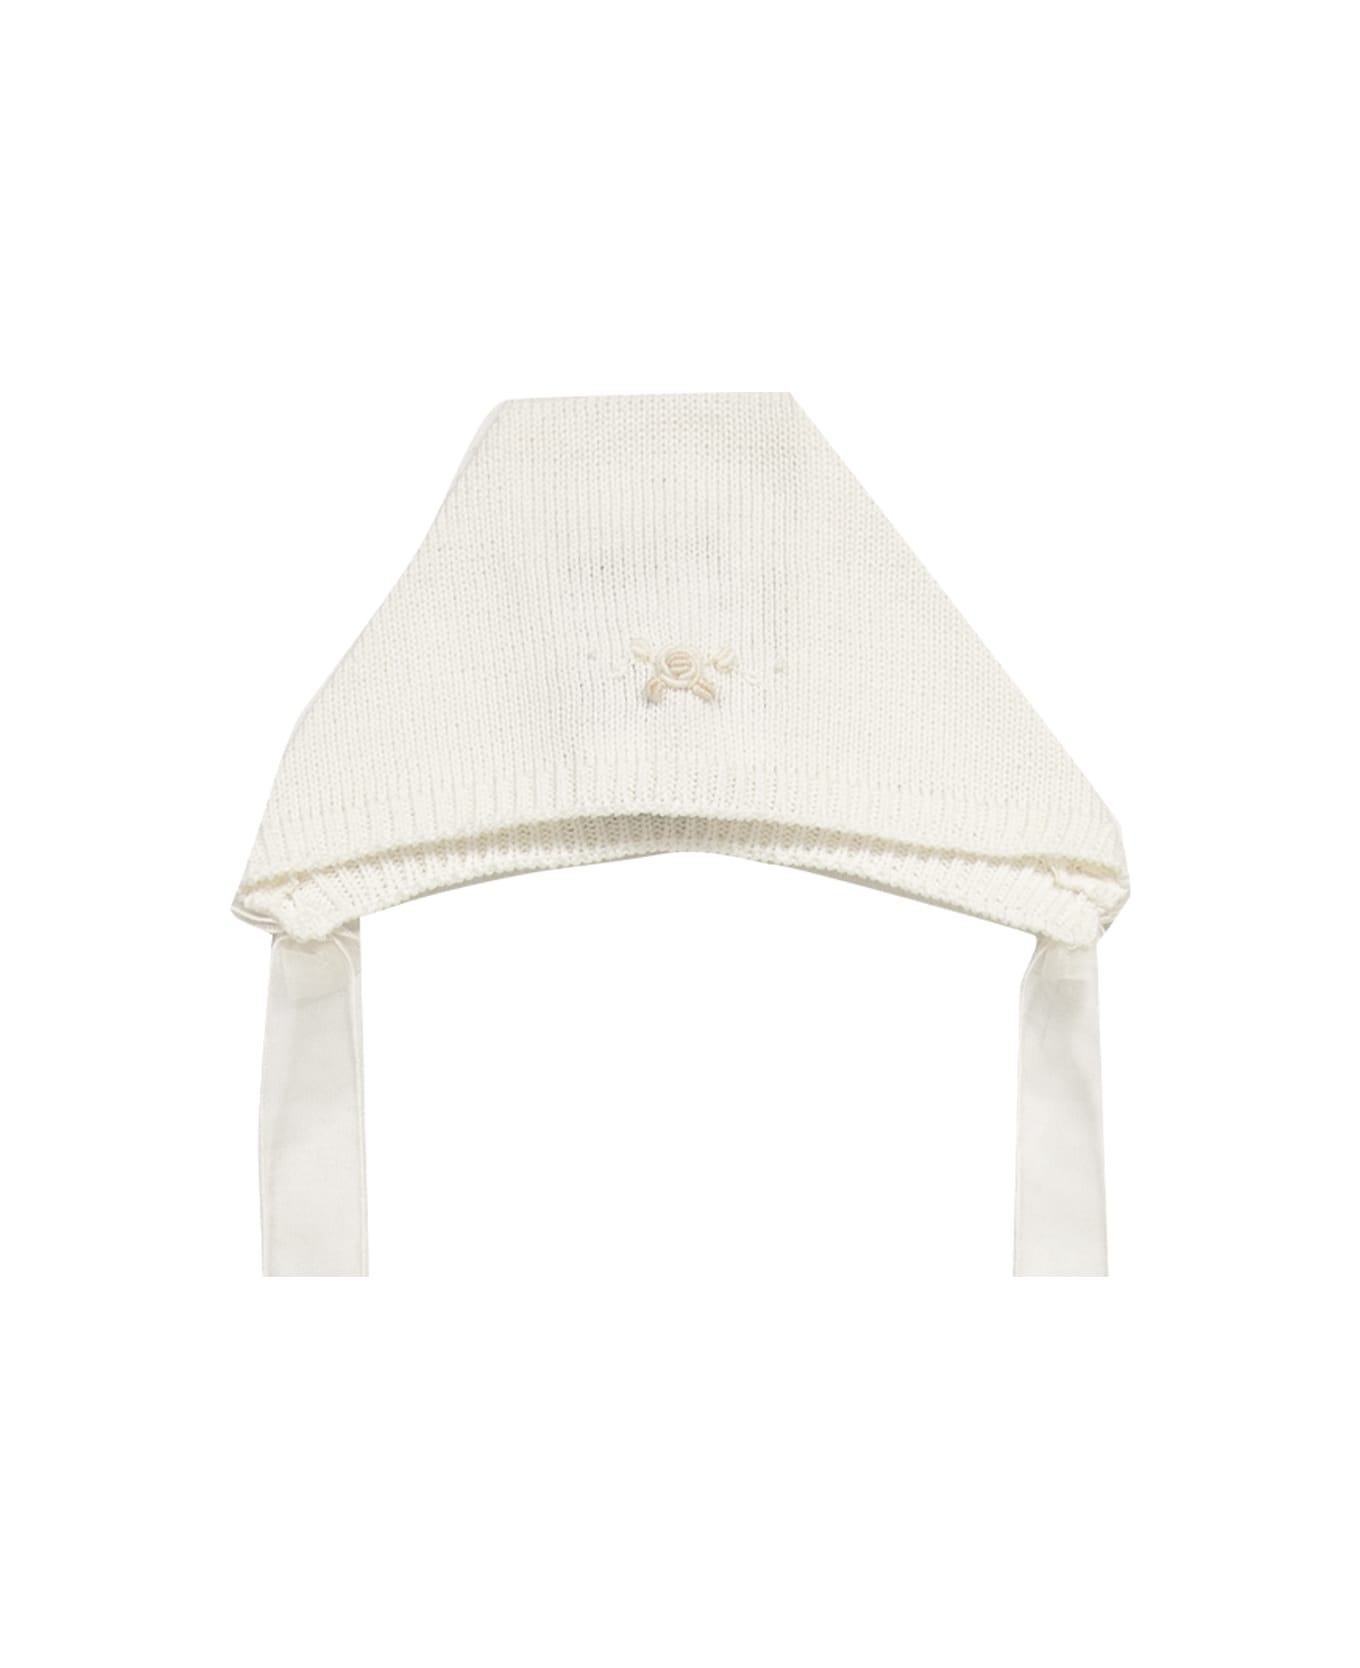 Piccola Giuggiola Cotton Knit Ear Cap canotier - White